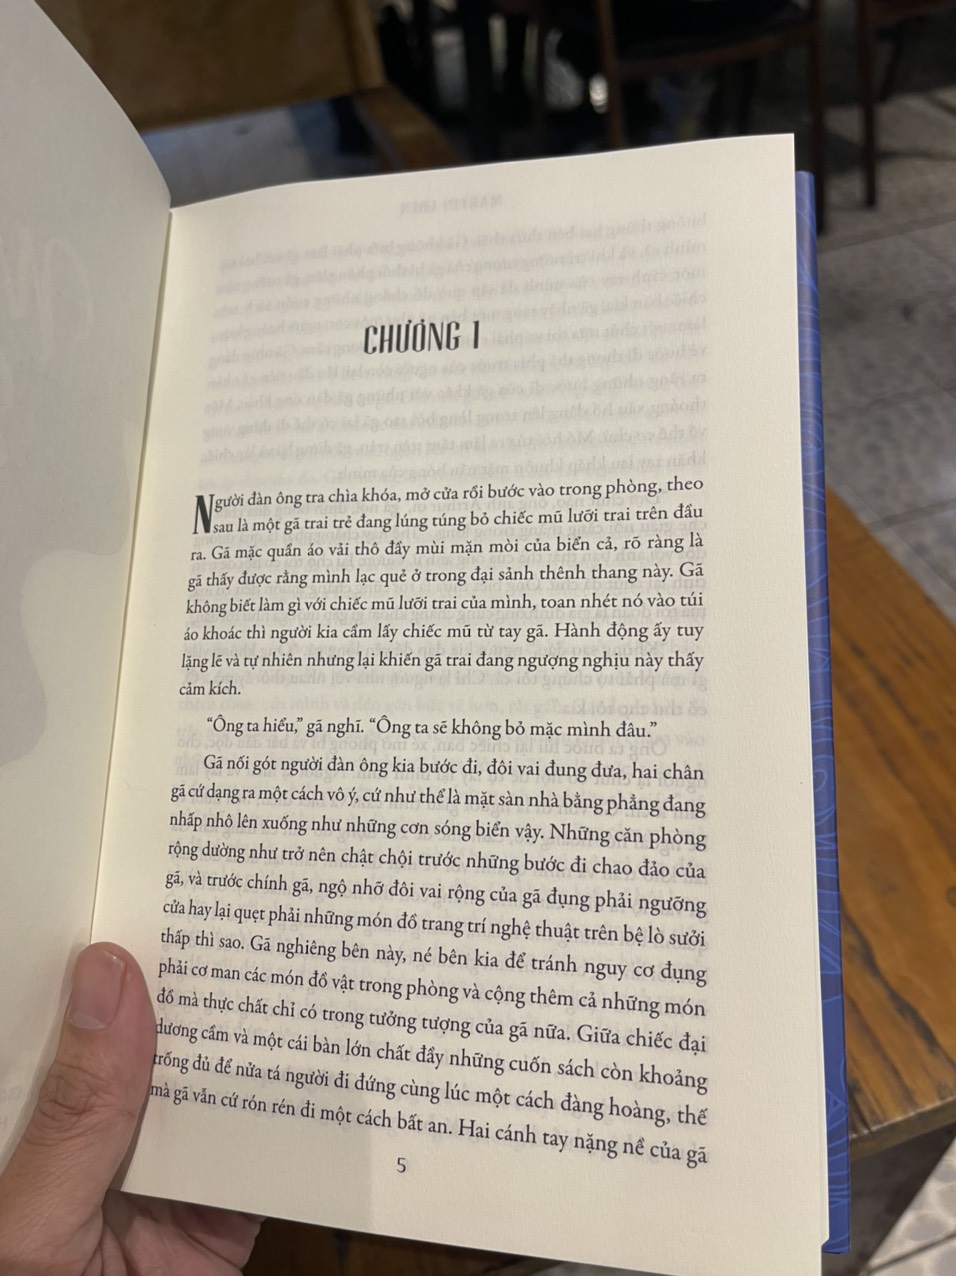 (Bìa cứng) MARTIN EDEN – Jack London – Hàn Băng dịch – Gieo Books - NXB Dân Trí